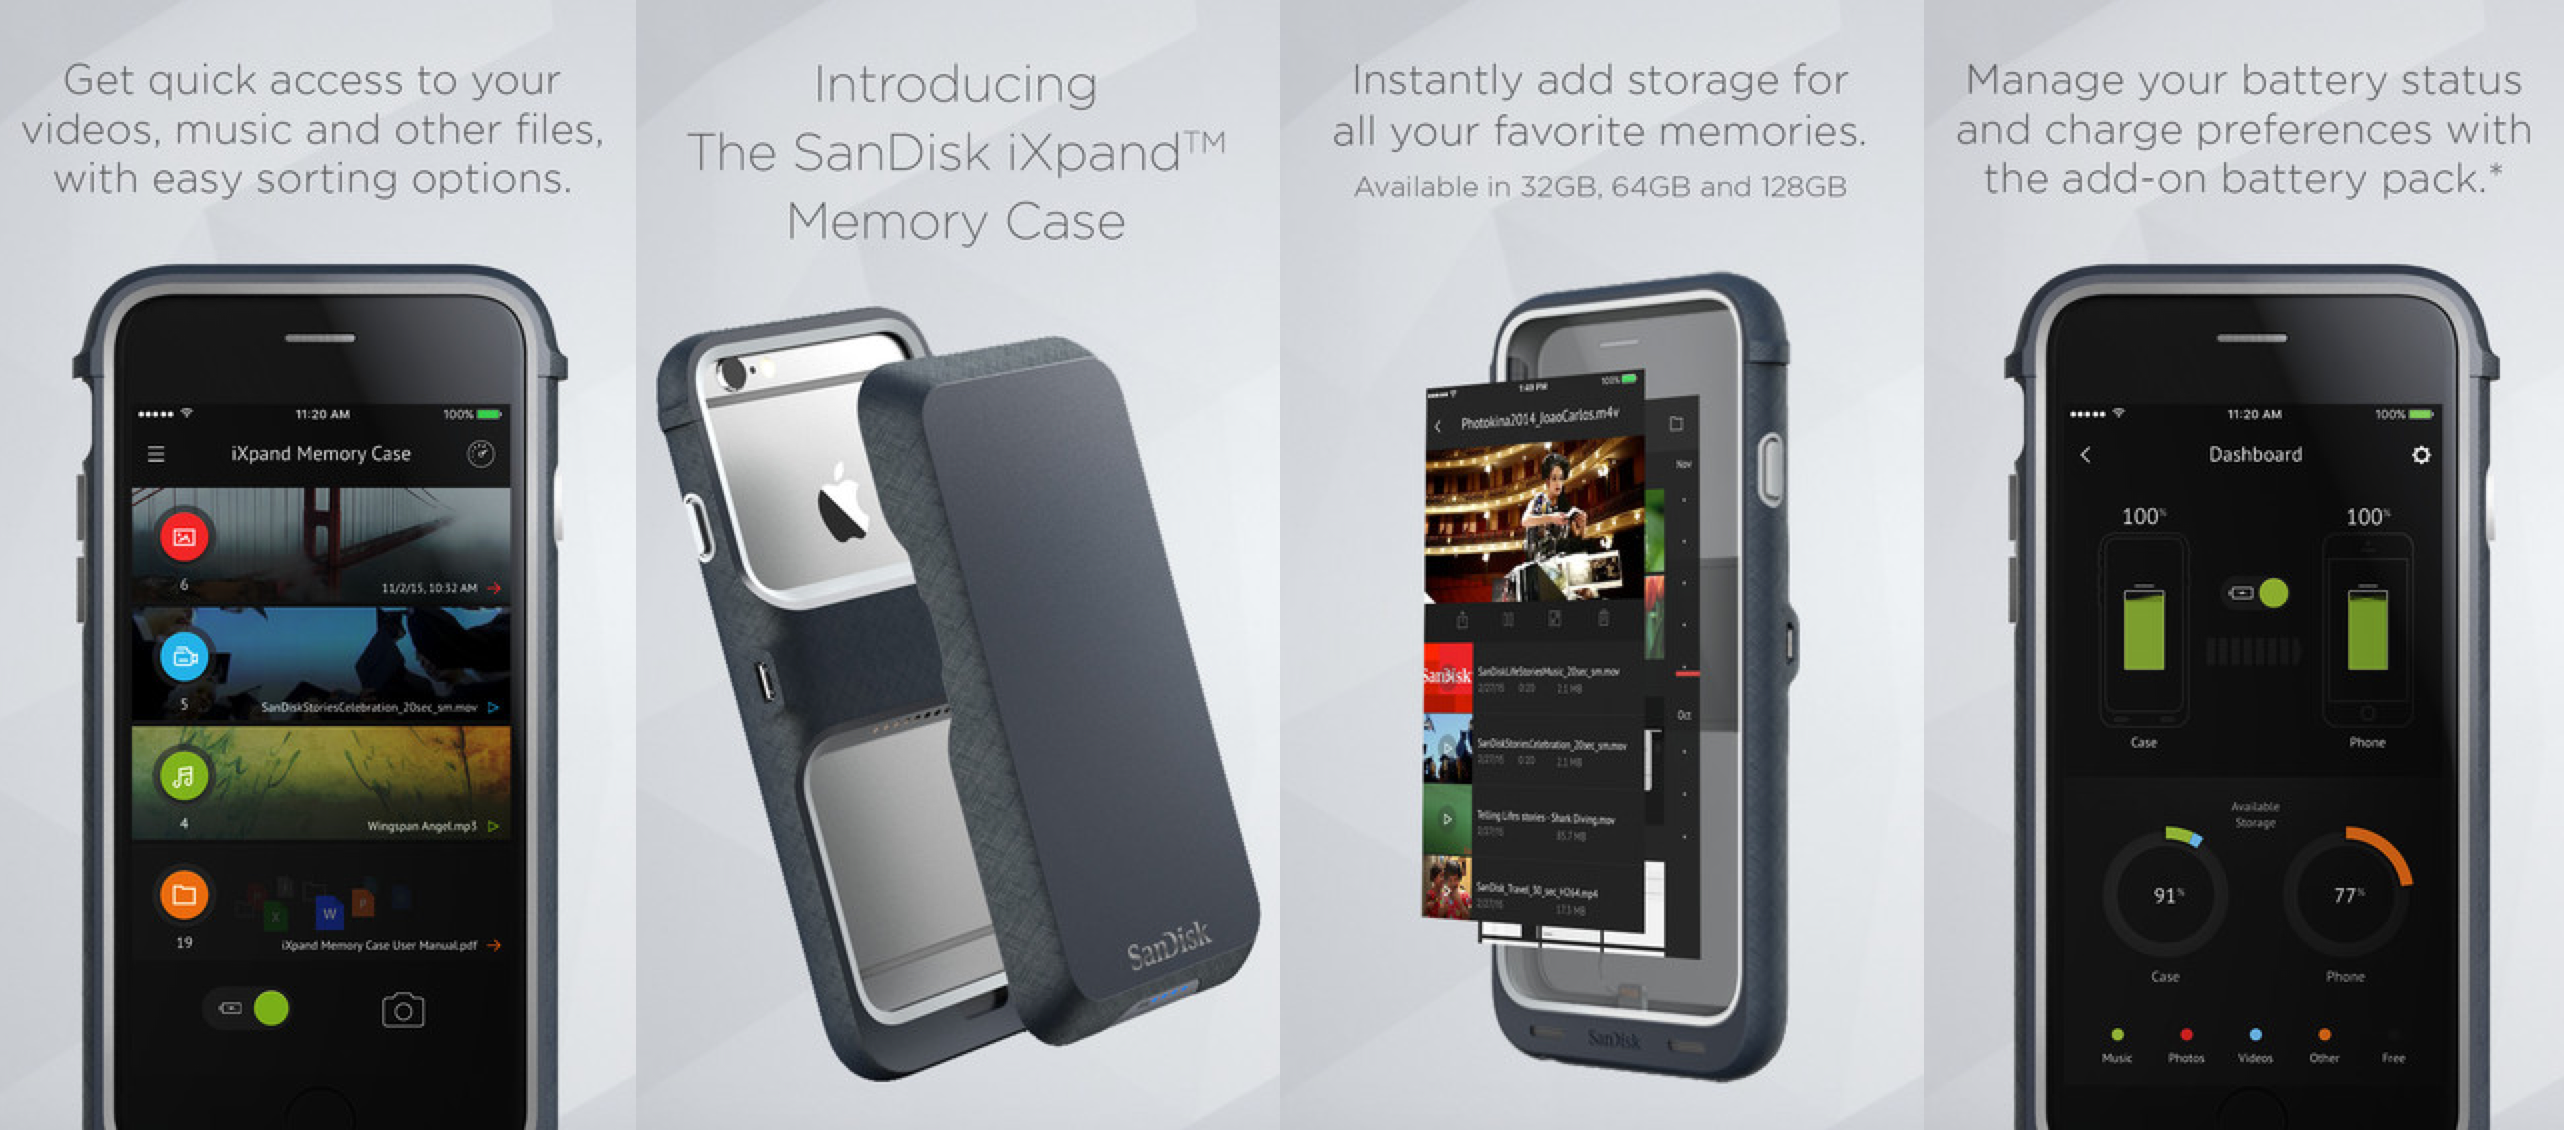 iXpand-Memory-case